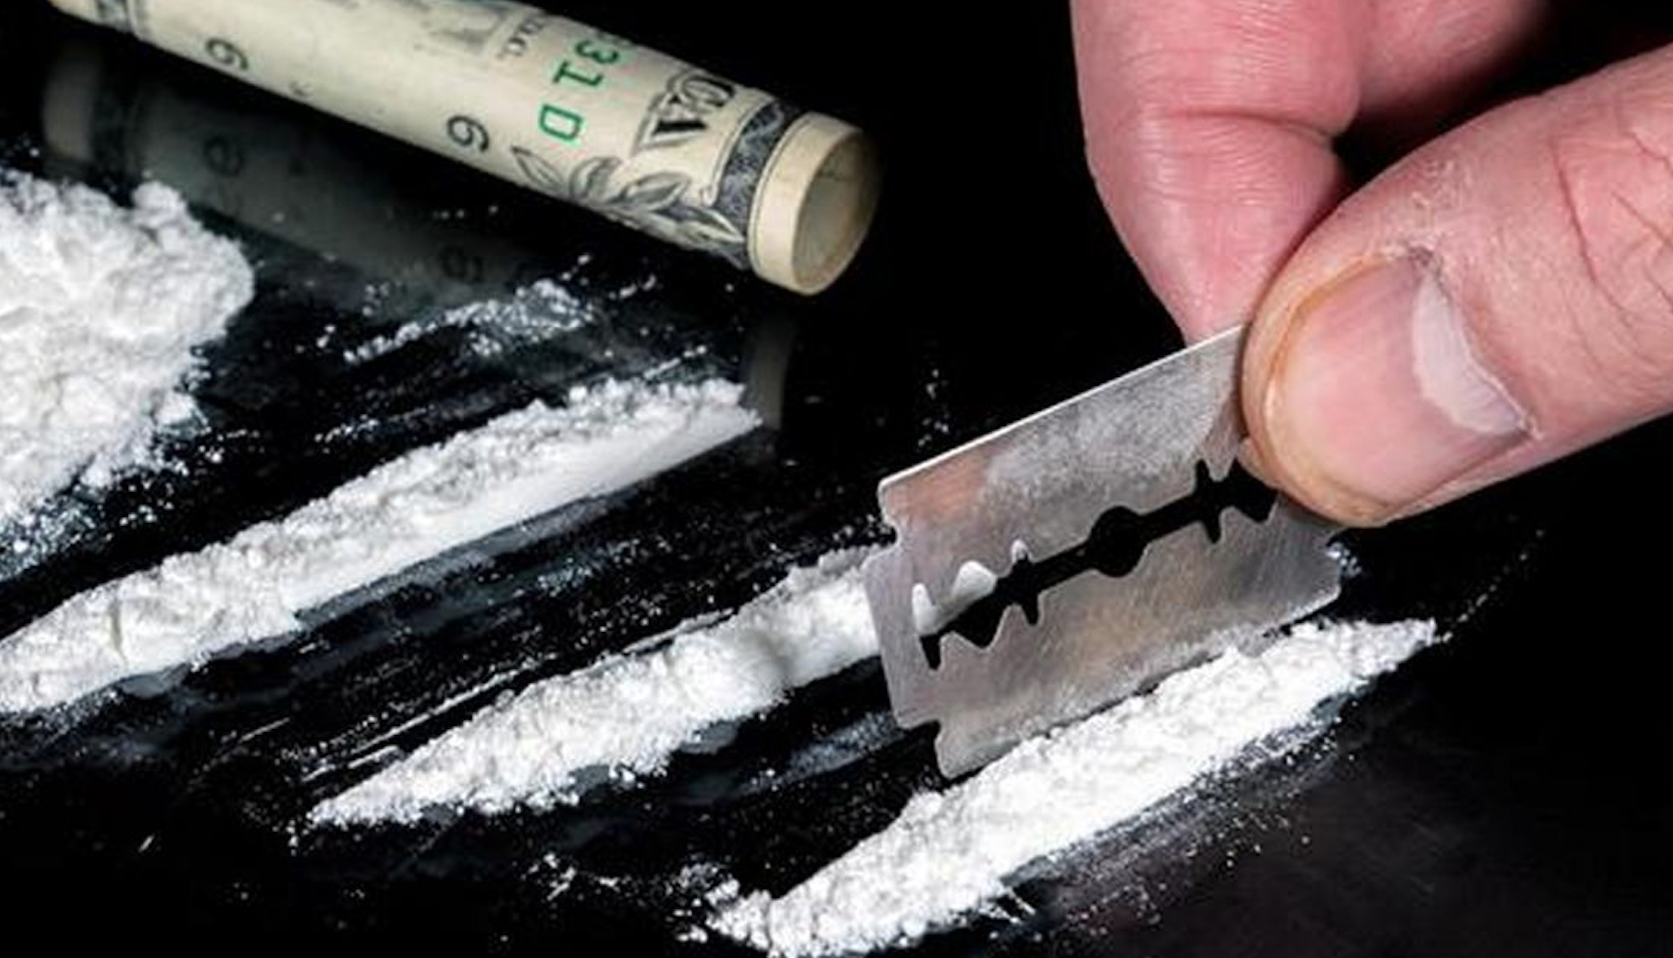 Bélgica aplicaría fuerte multa a quien detengan consumiendo drogas duras